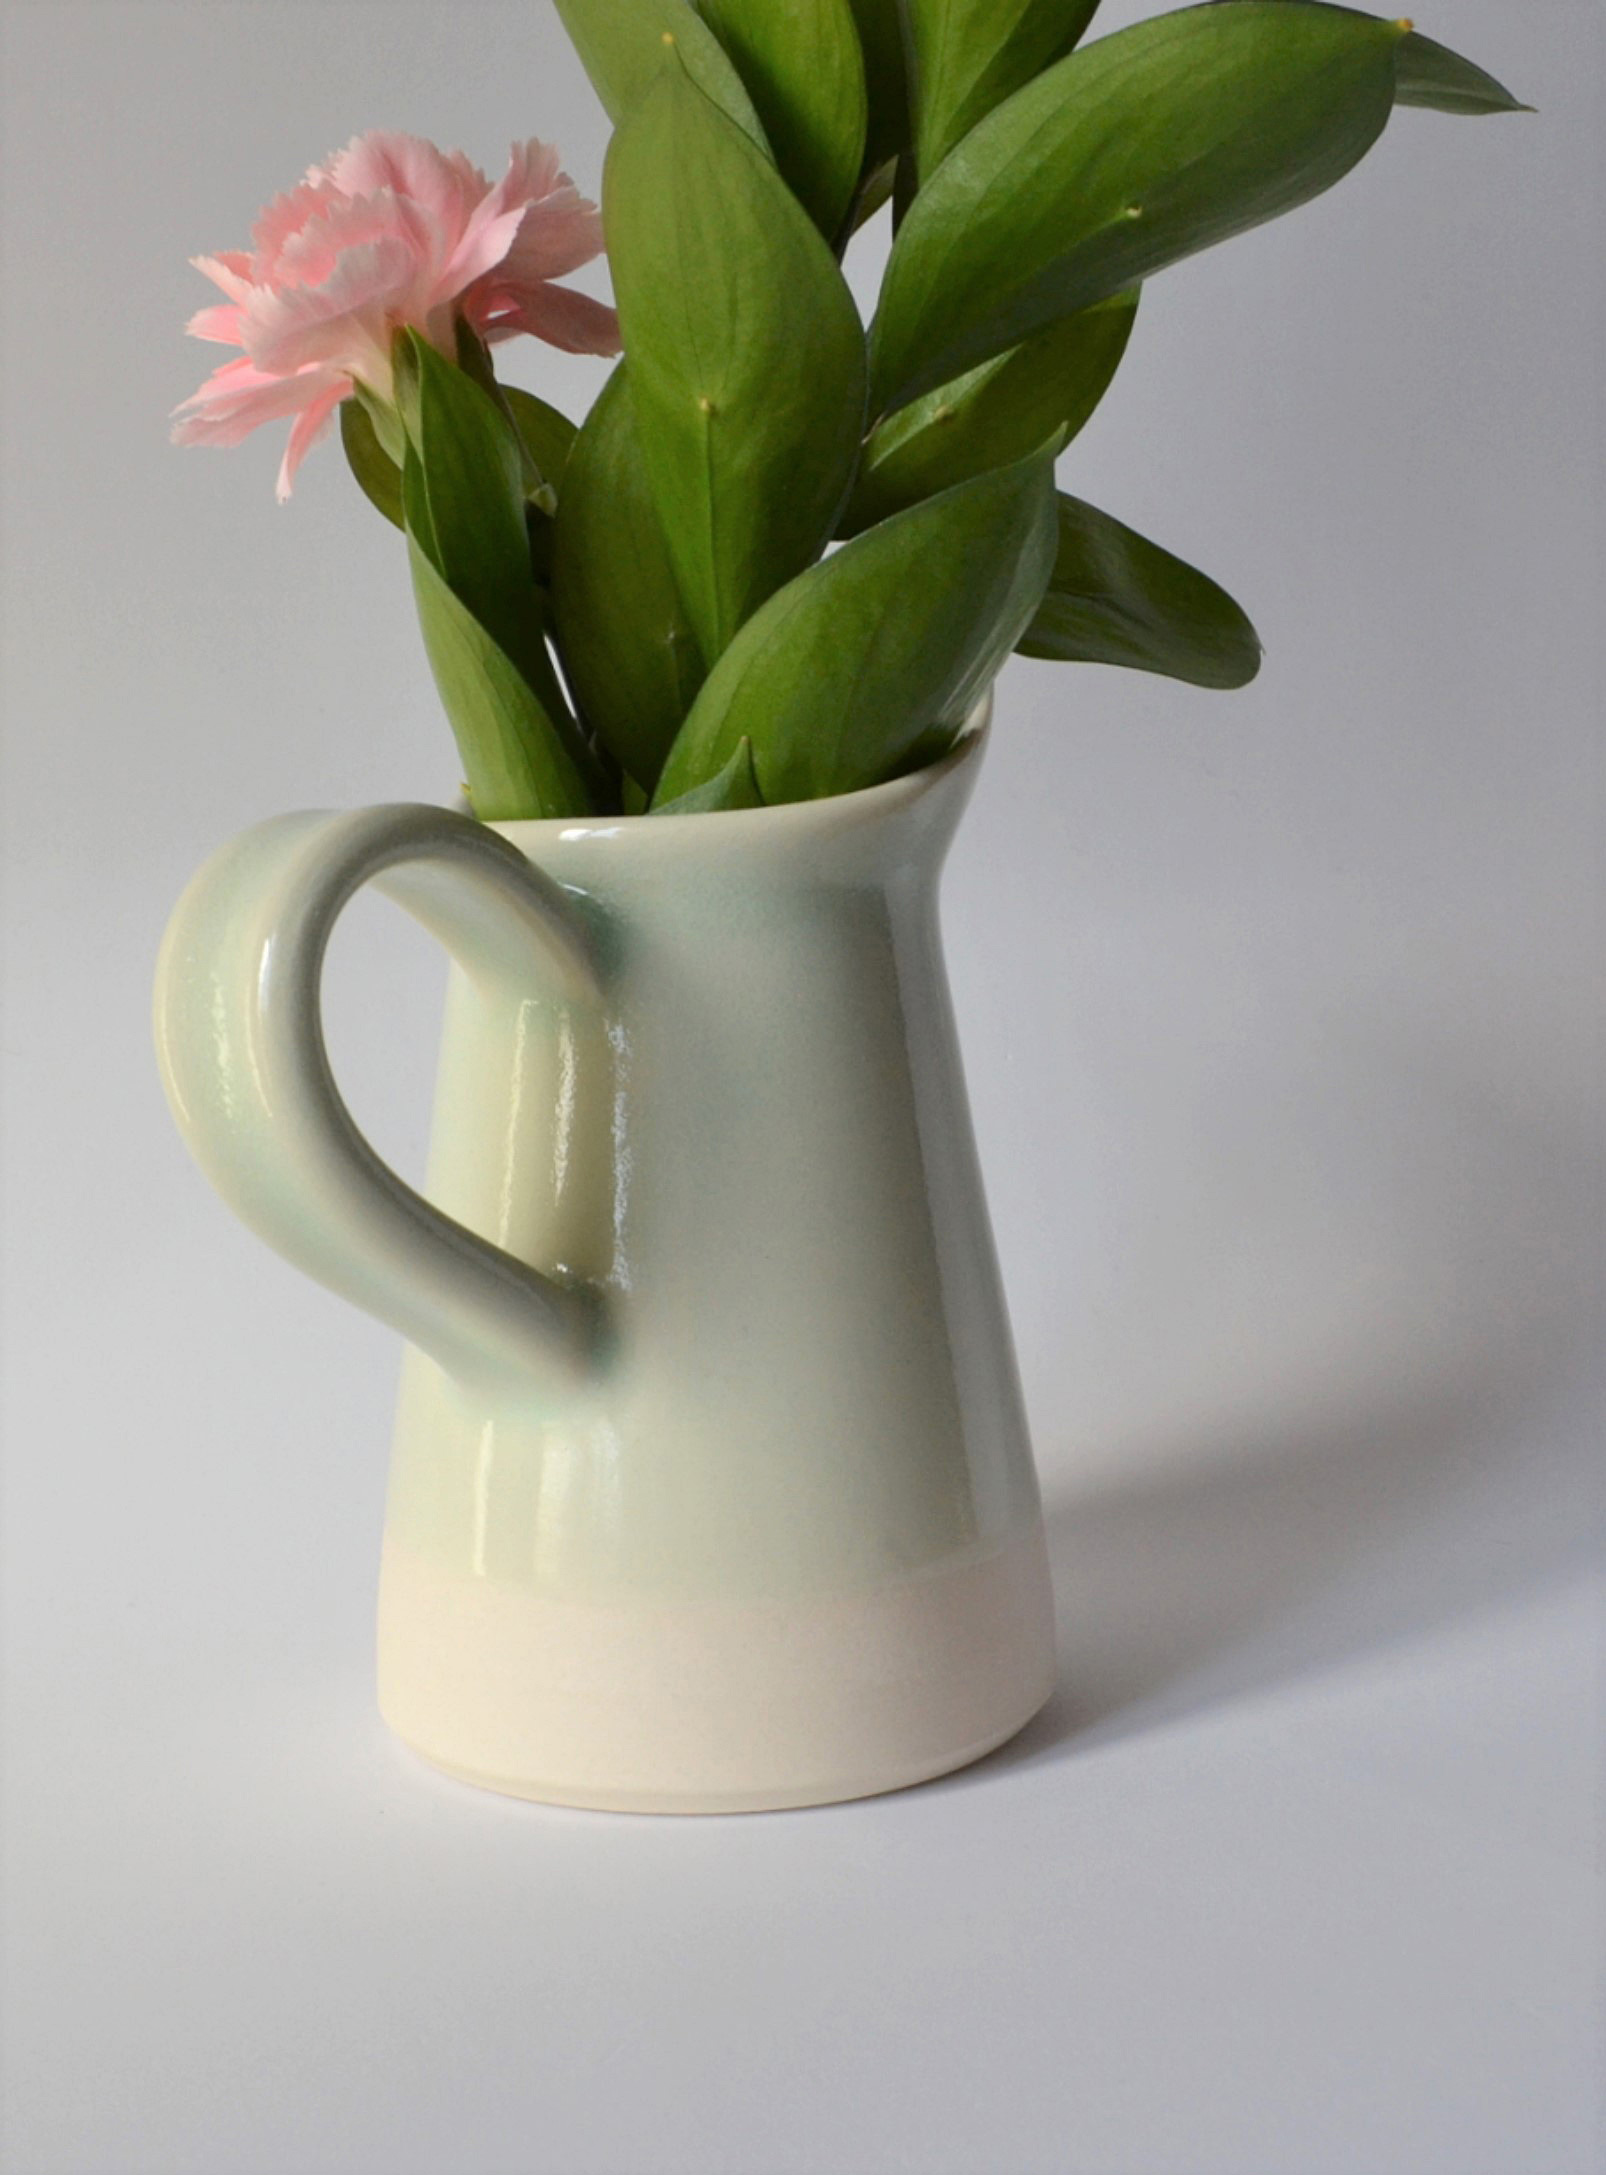 Akai Ceramic Studio - Le minivase pichet en porcelaine 11,5 cm de hauteur